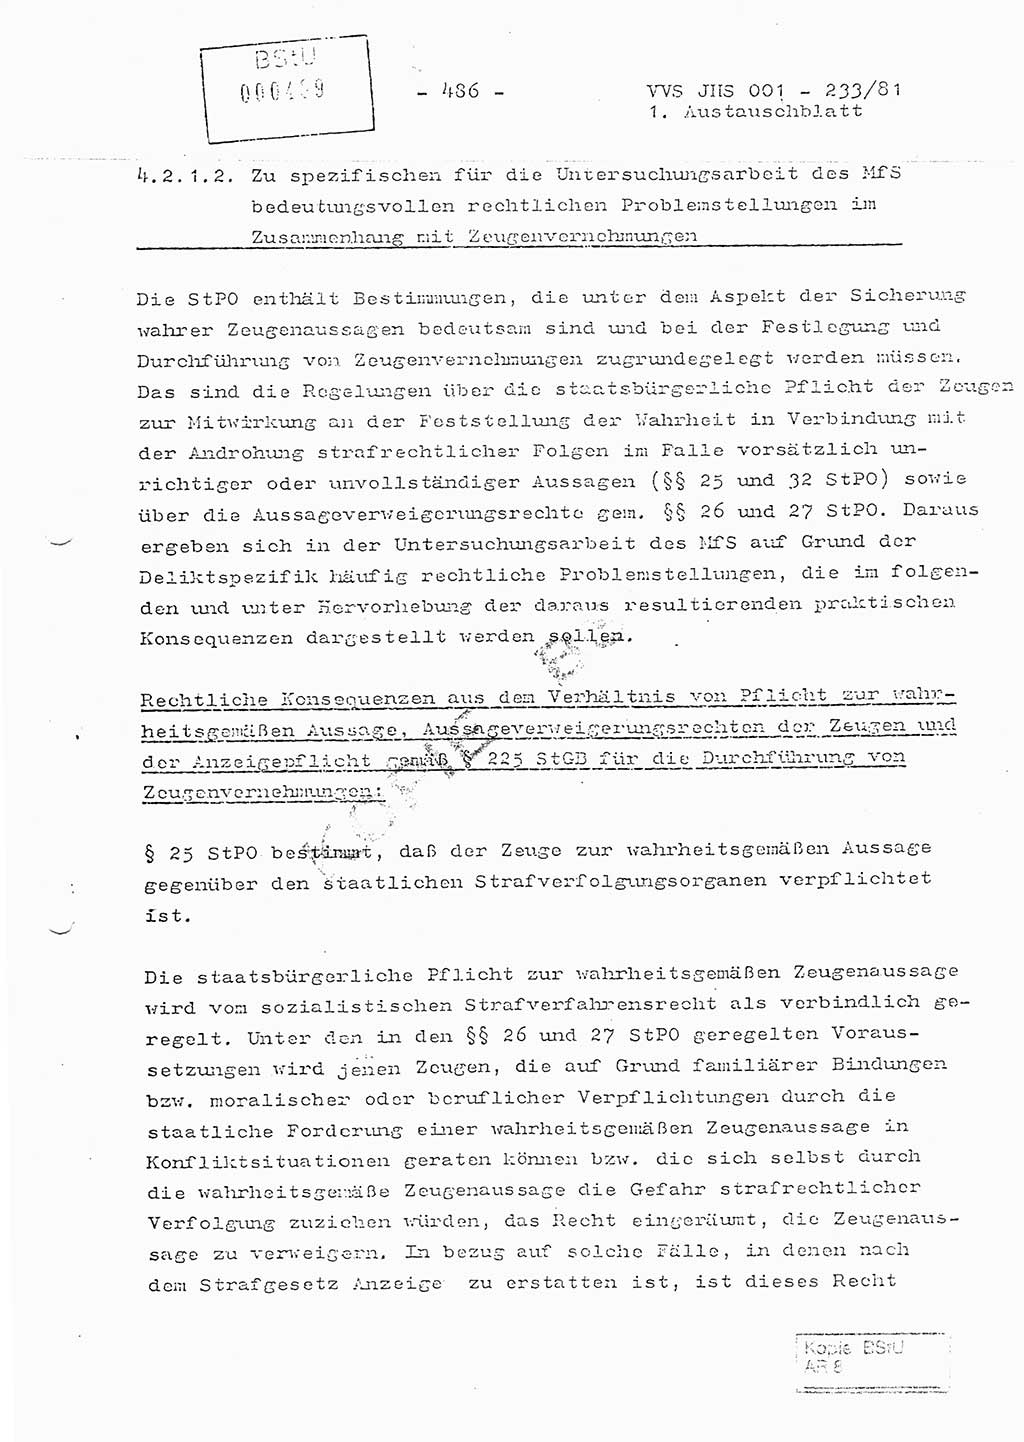 Dissertation Oberstleutnant Horst Zank (JHS), Oberstleutnant Dr. Karl-Heinz Knoblauch (JHS), Oberstleutnant Gustav-Adolf Kowalewski (HA Ⅸ), Oberstleutnant Wolfgang Plötner (HA Ⅸ), Ministerium für Staatssicherheit (MfS) [Deutsche Demokratische Republik (DDR)], Juristische Hochschule (JHS), Vertrauliche Verschlußsache (VVS) o001-233/81, Potsdam 1981, Blatt 486 (Diss. MfS DDR JHS VVS o001-233/81 1981, Bl. 486)